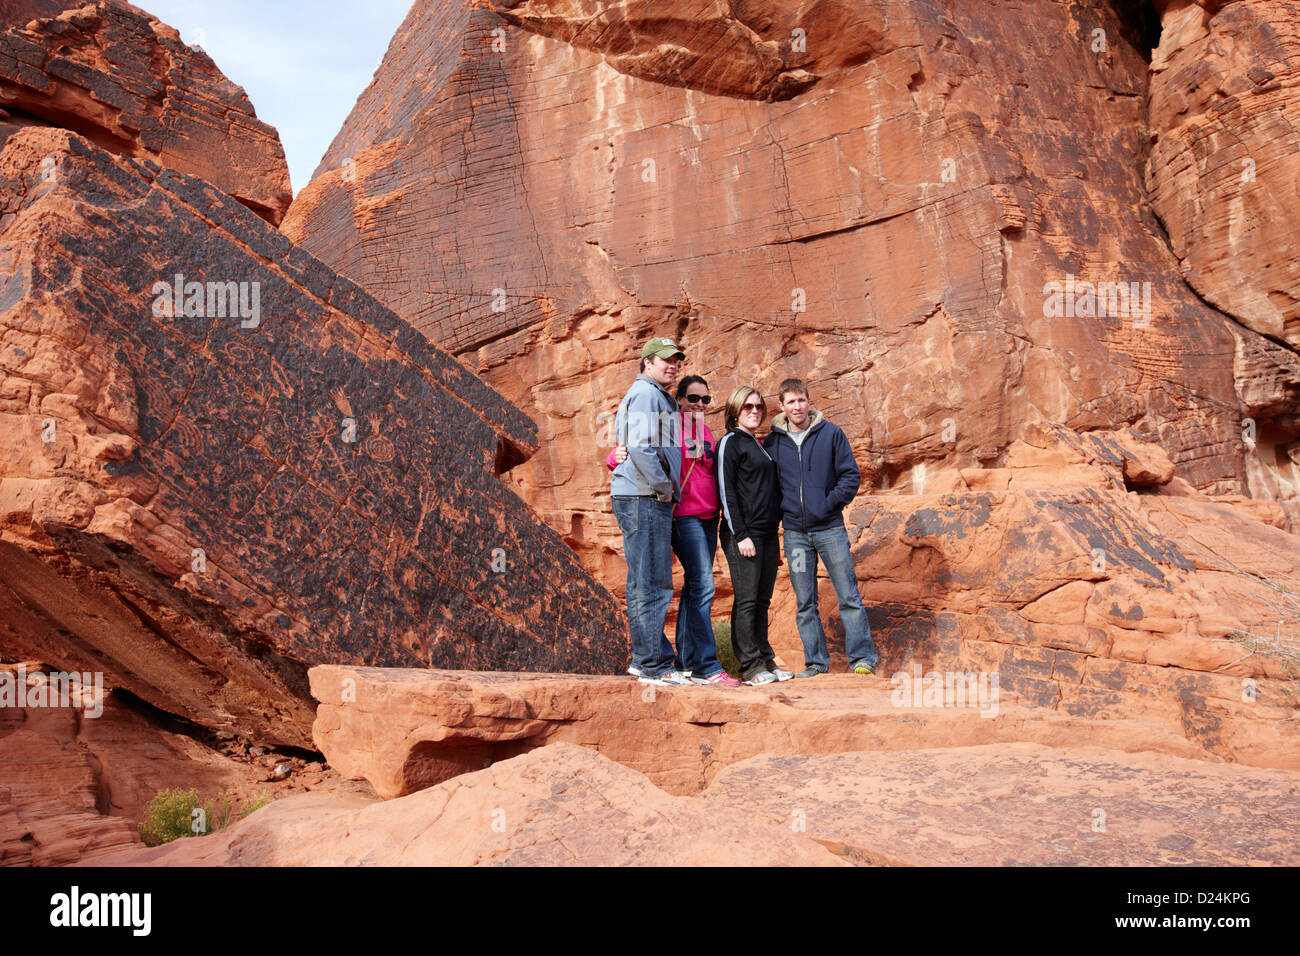 Les touristes posent devant des pétroglyphes sur atlatl rock grand Valley of Fire State Park nevada usa Banque D'Images